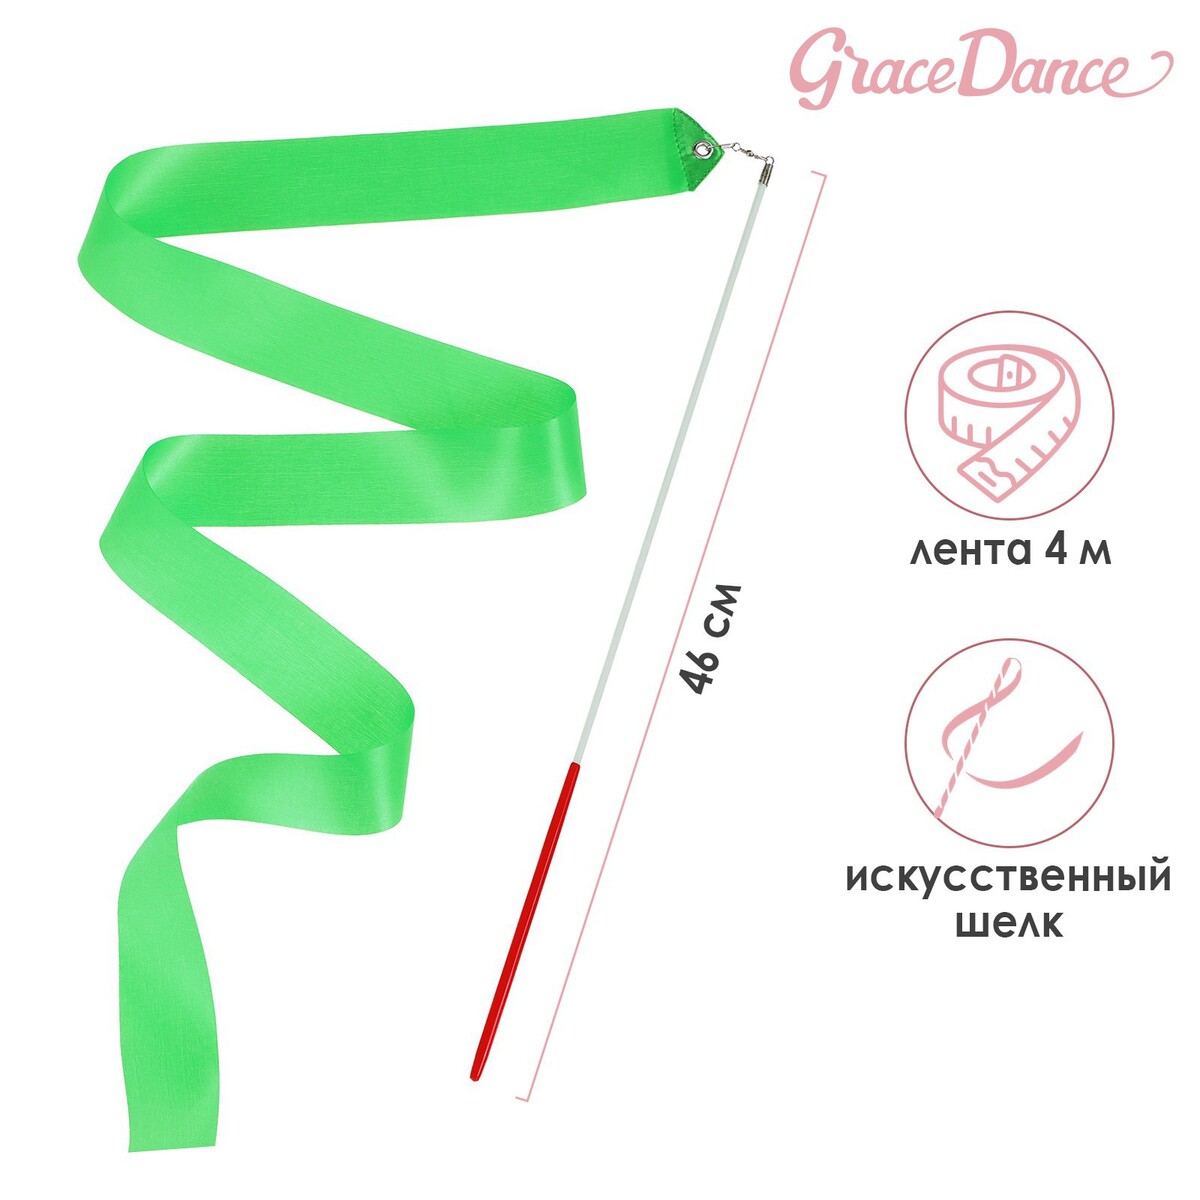 Лента для художественной гимнастики с палочкой grace dance, 4 м, цвет зеленый